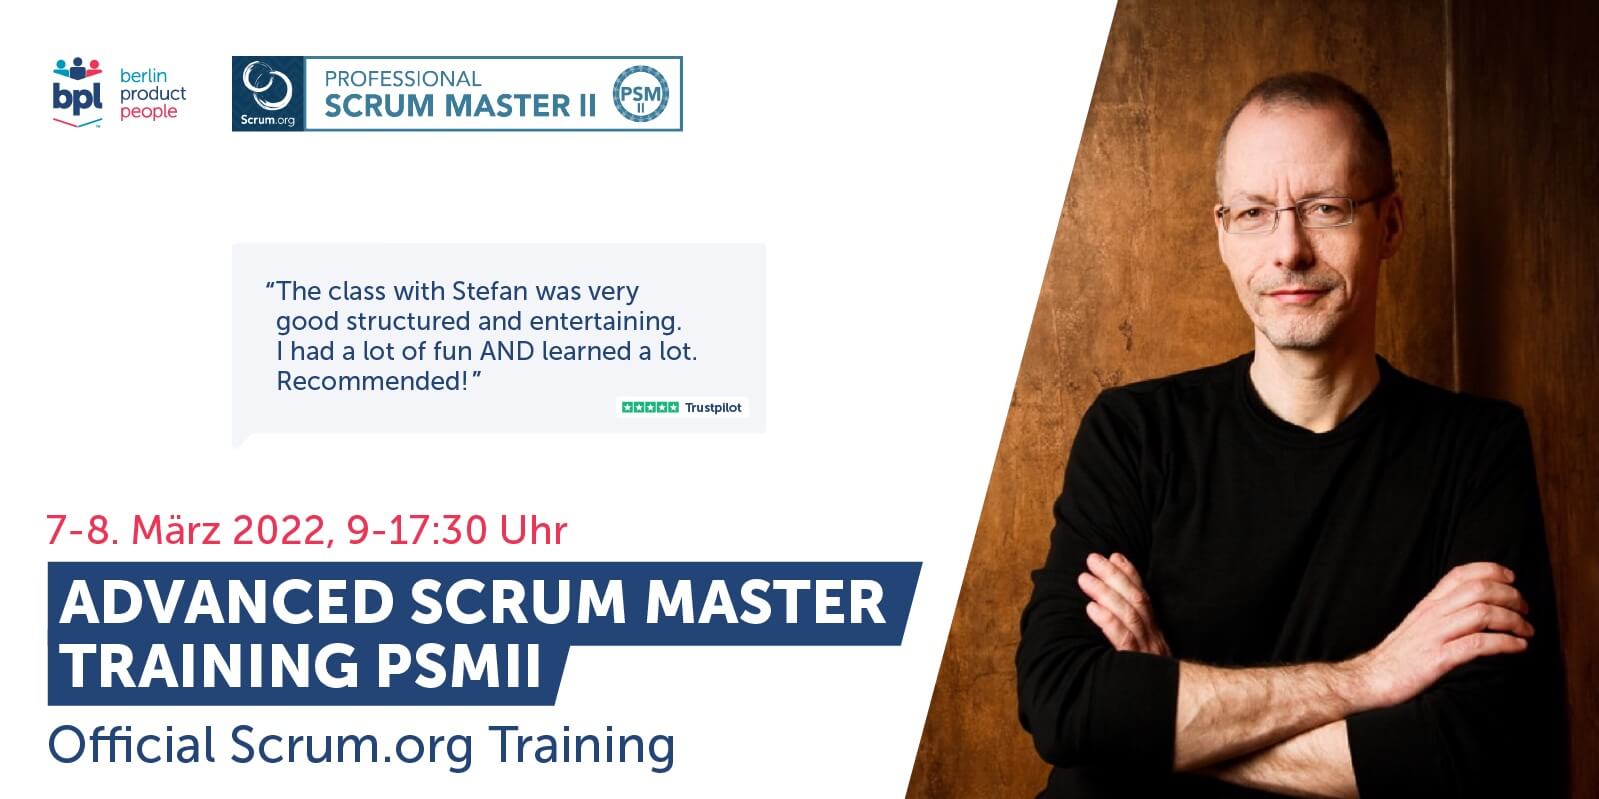 Fortgeschrittenen Professional Scrum Master Online Schulung auf Deutsch mit PSM II Zertifikat — 7. - 8. März 2022